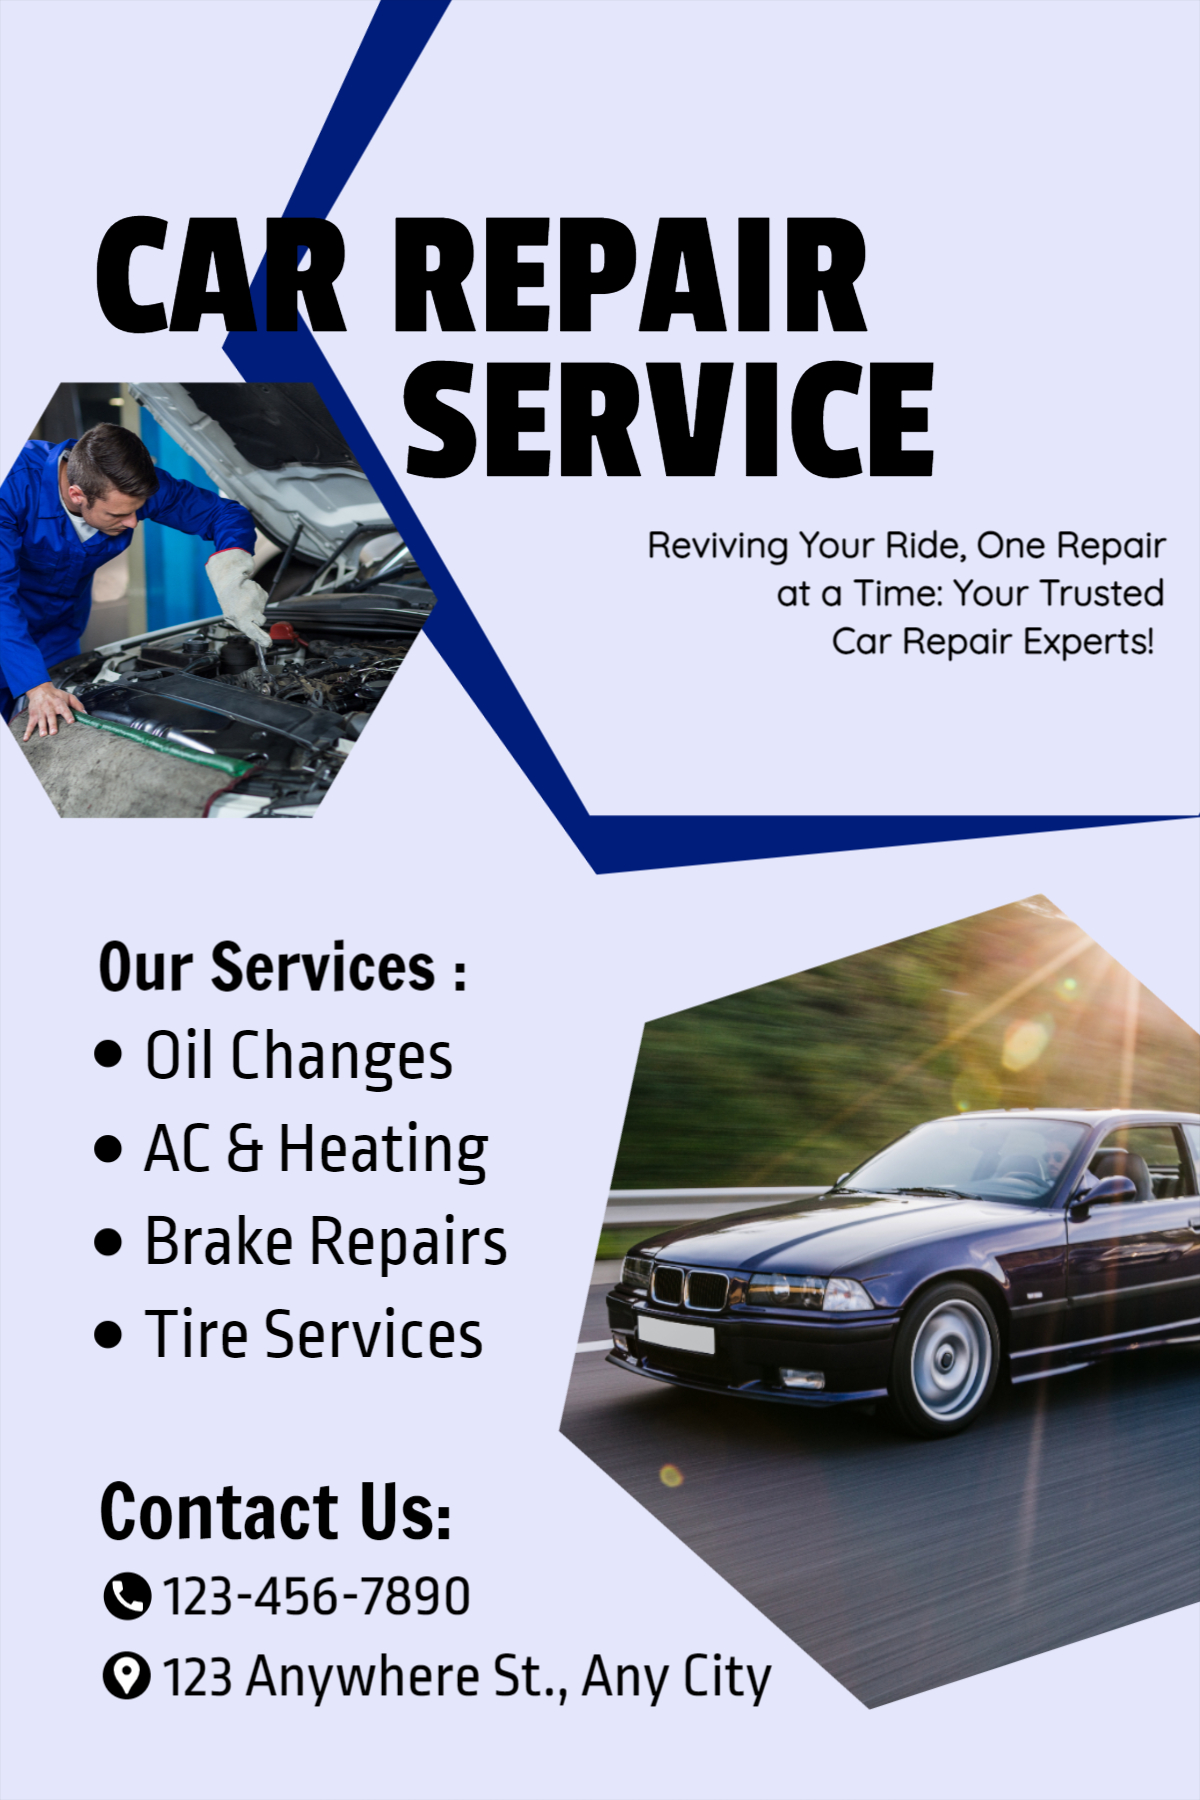 Car Repair Service poster design download for free